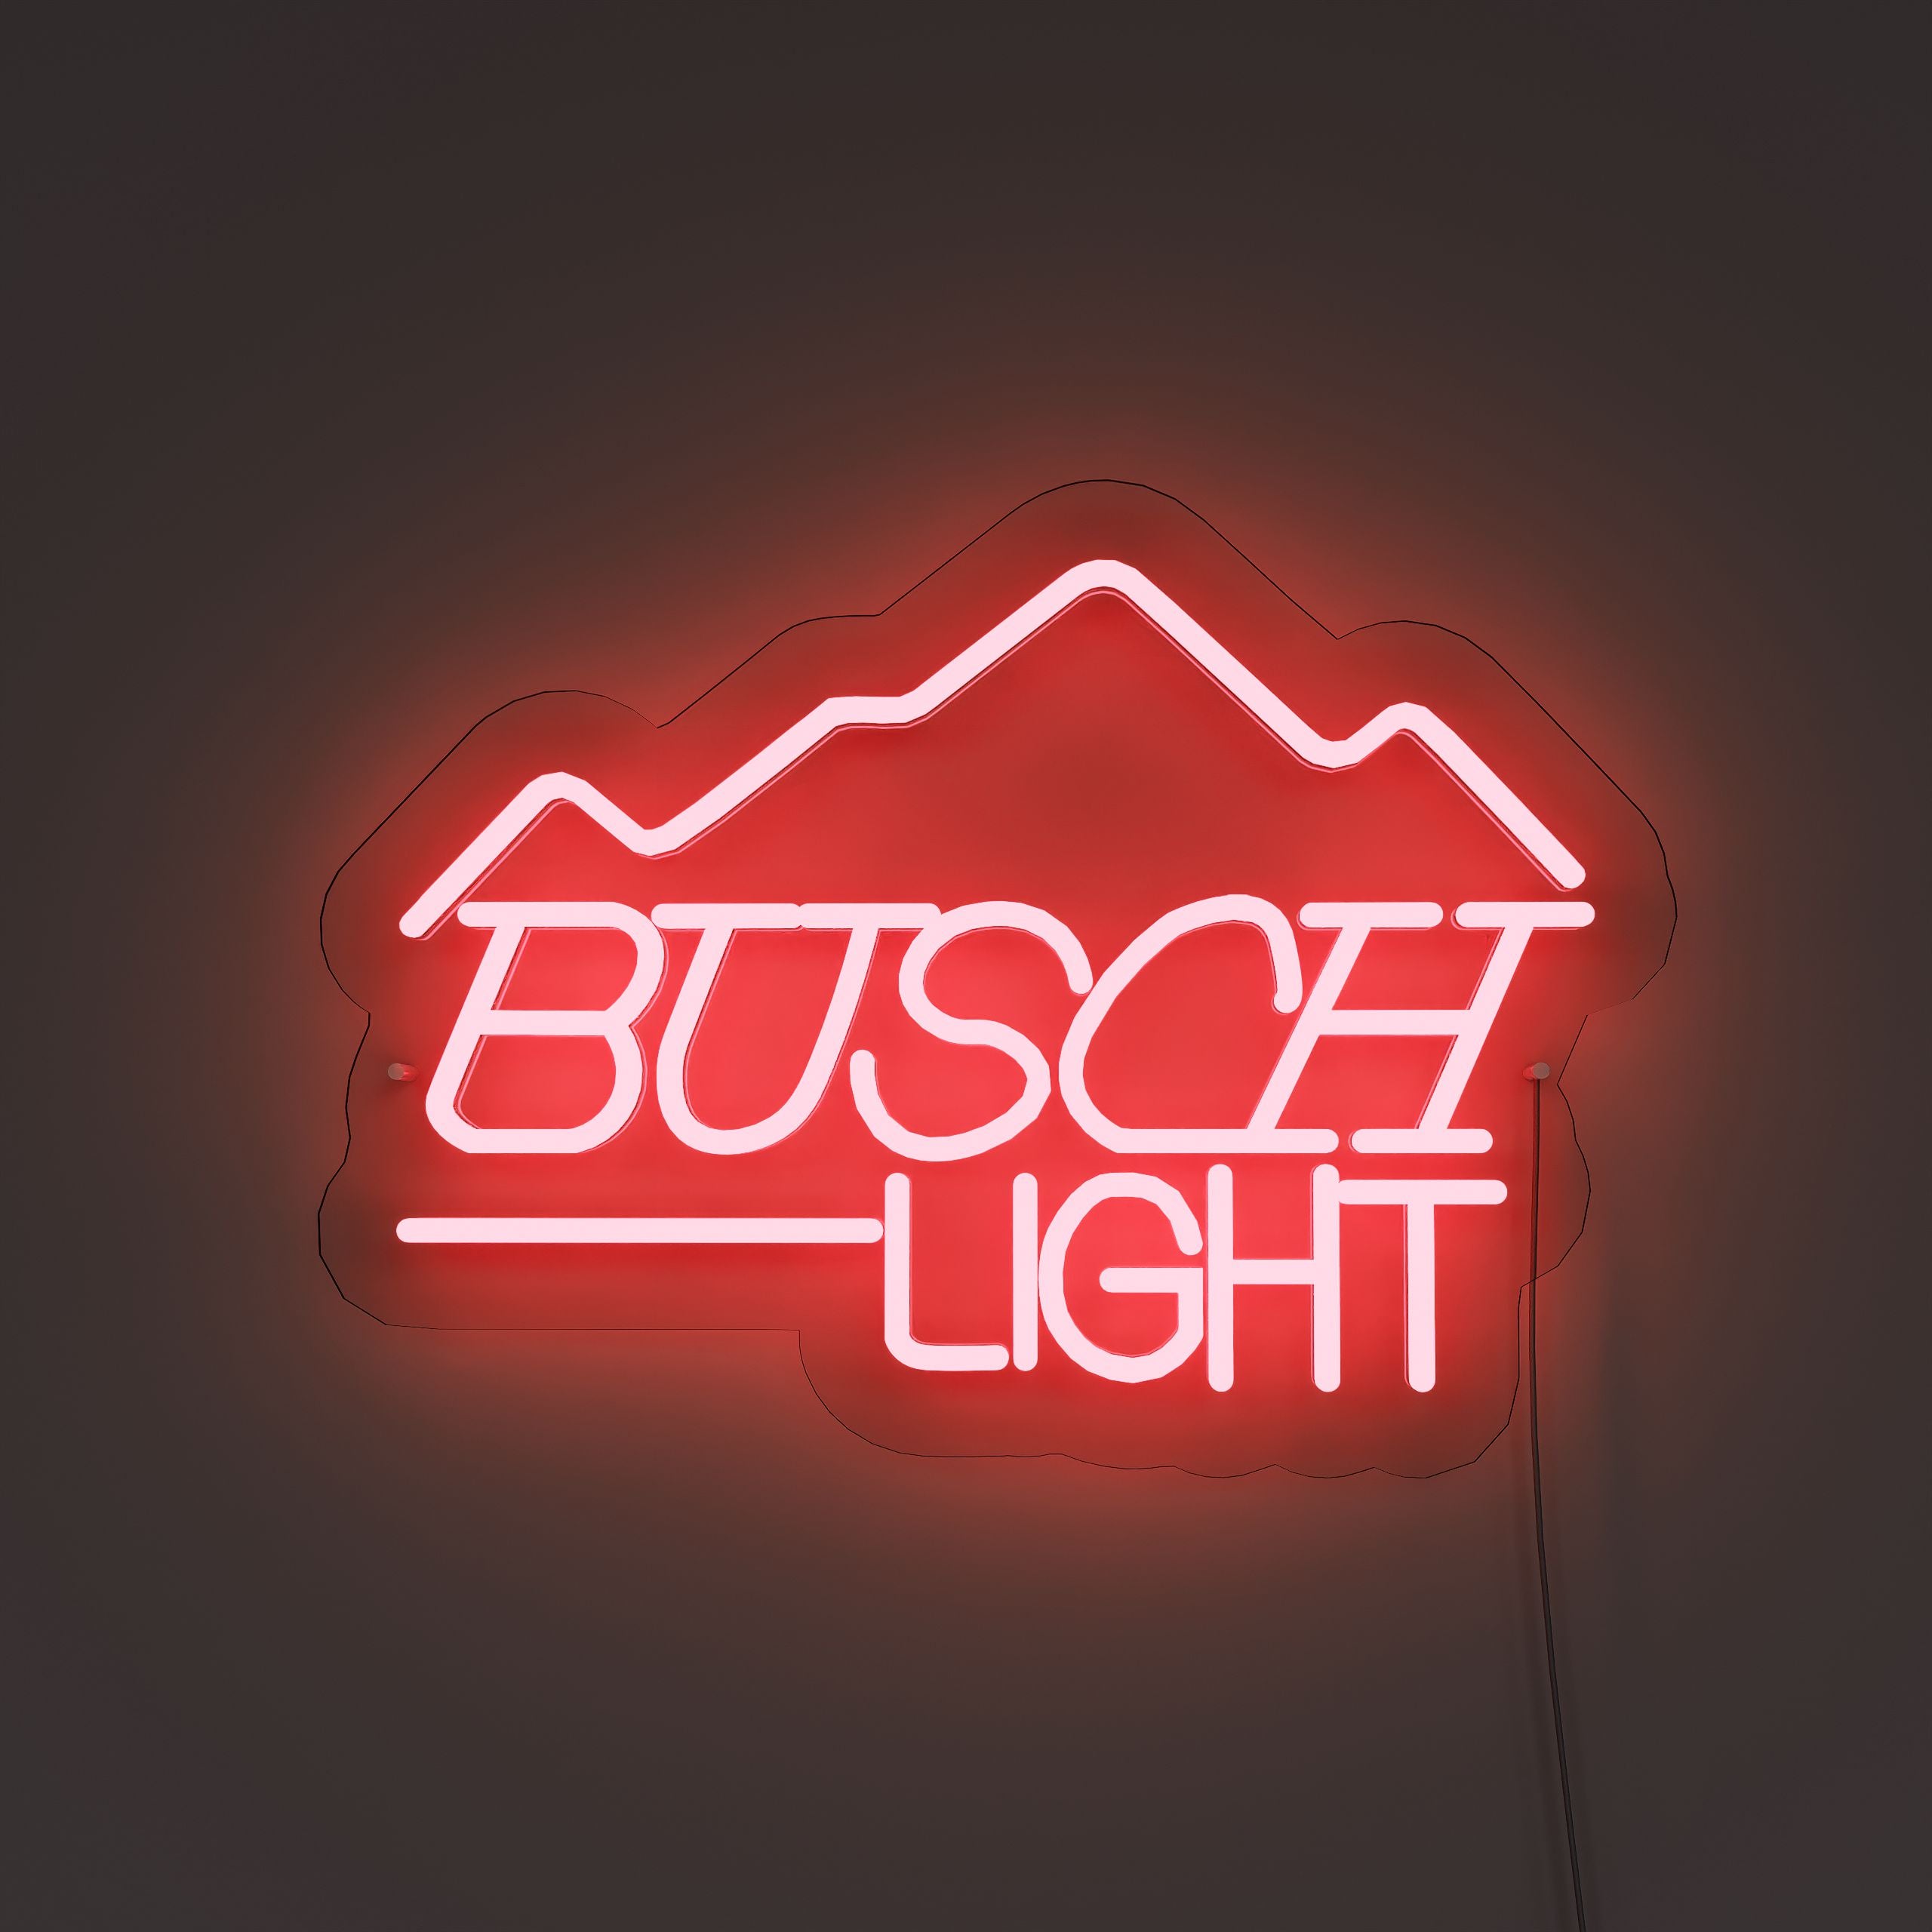 fbusch-light-neon-signs-FireBrick-Neon-sign-Lite